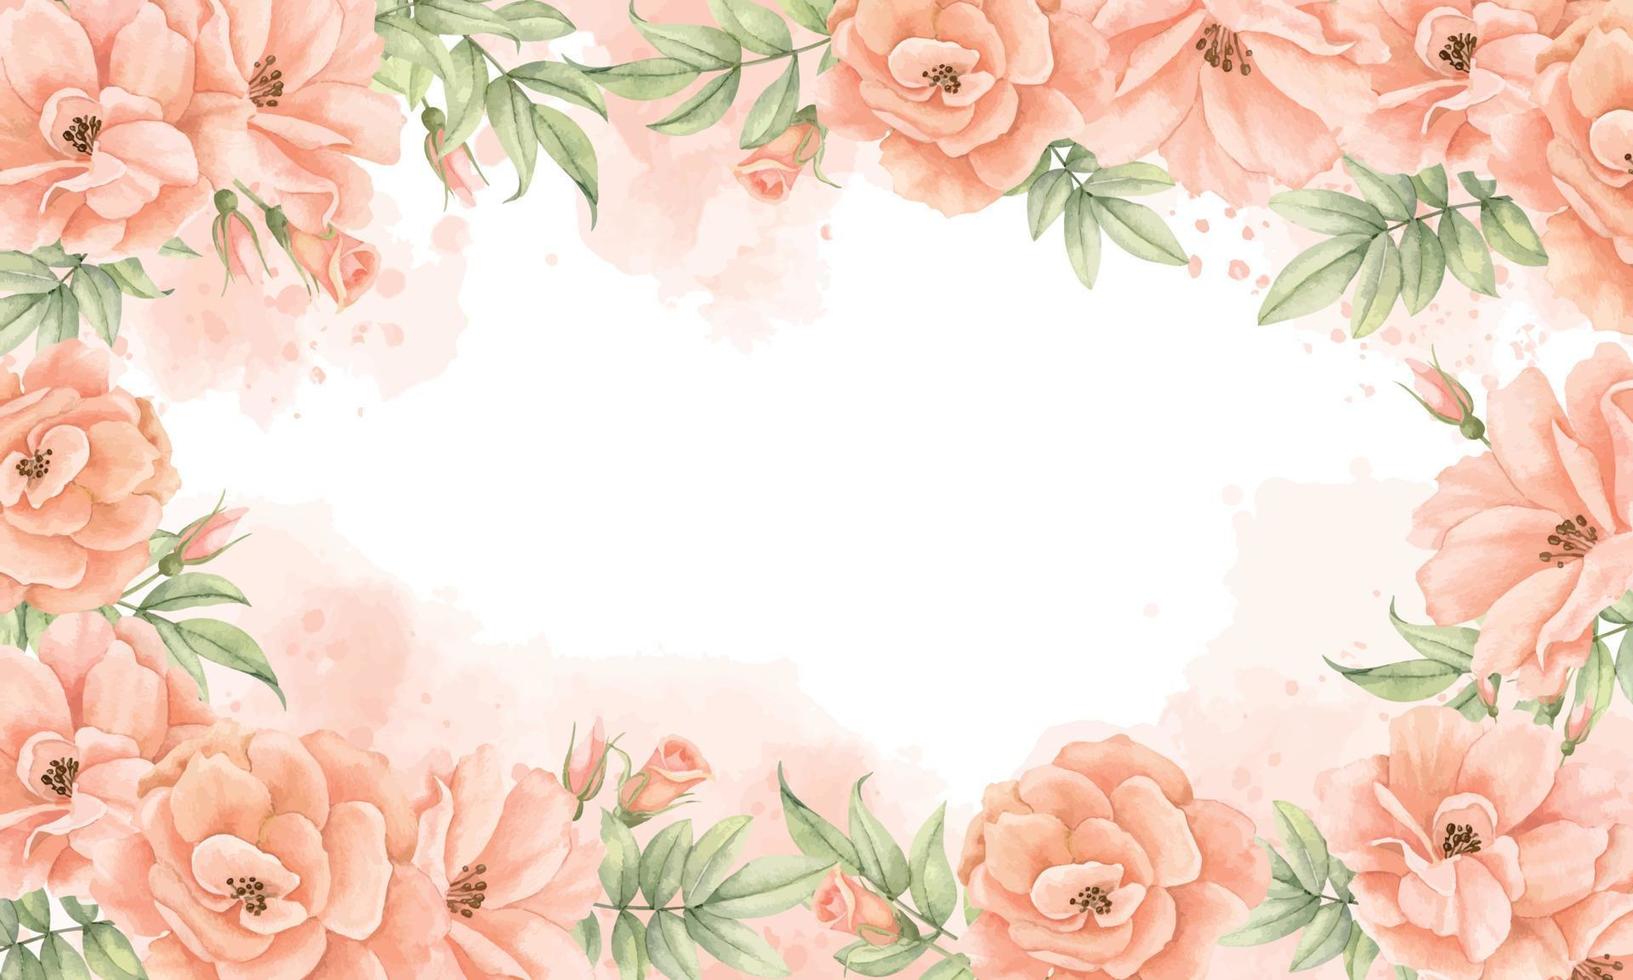 moldura floral em aquarela com flores rosas nas cores pêssego e rosa. modelo desenhado à mão para convite de casamento ou cartões comemorativos. ilustração em fundo isolado. fronteira botânica vetor